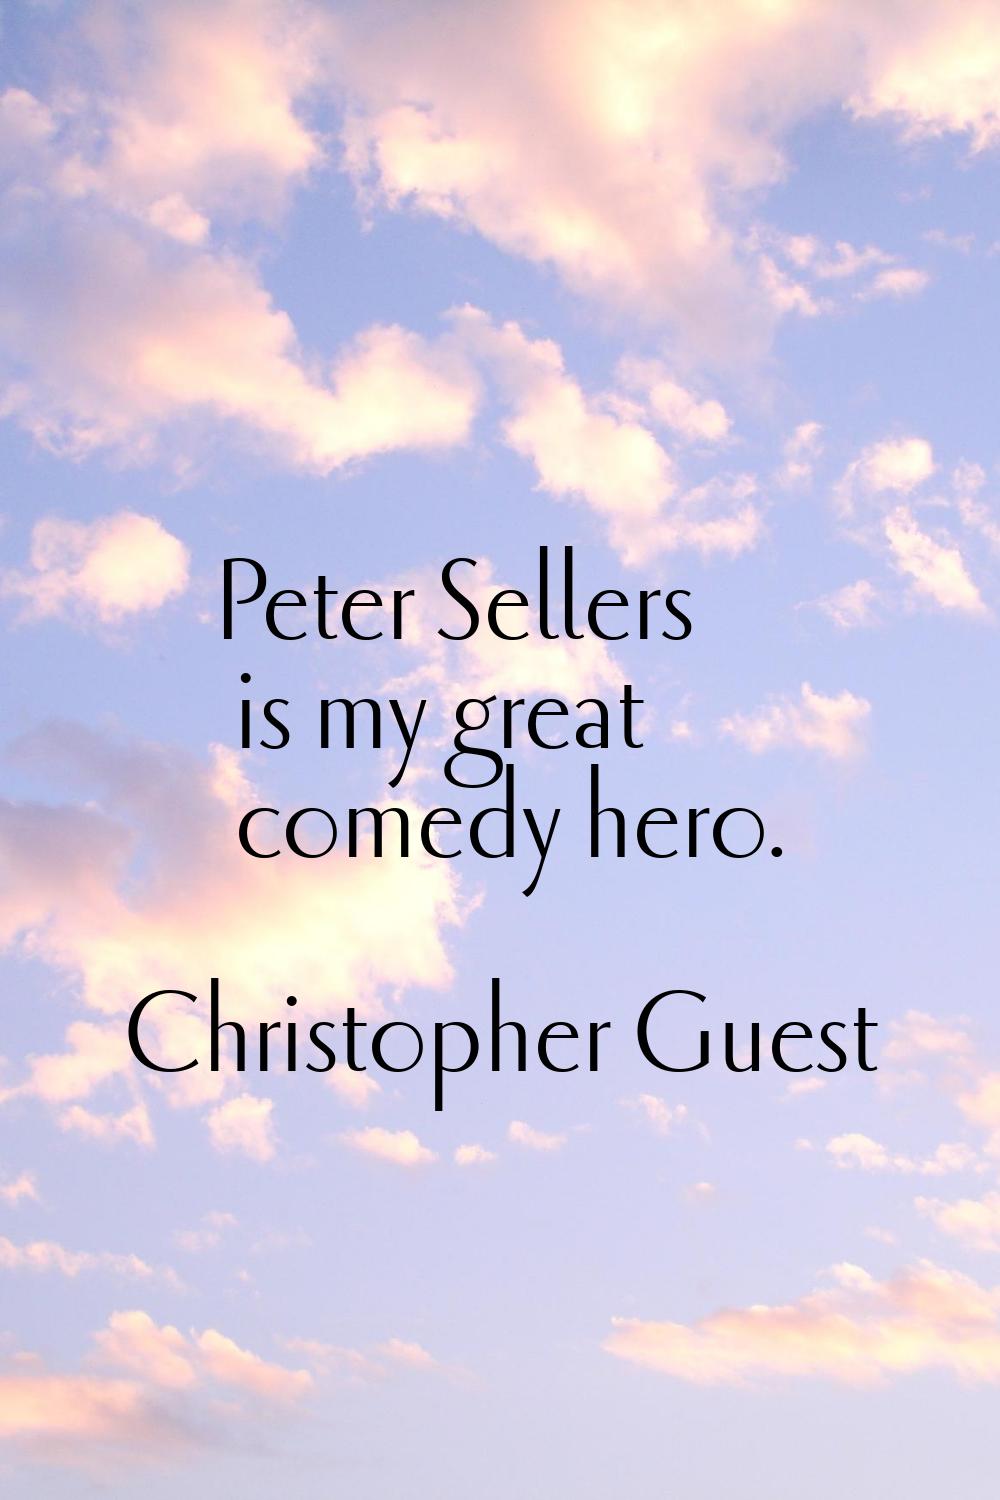 Peter Sellers is my great comedy hero.